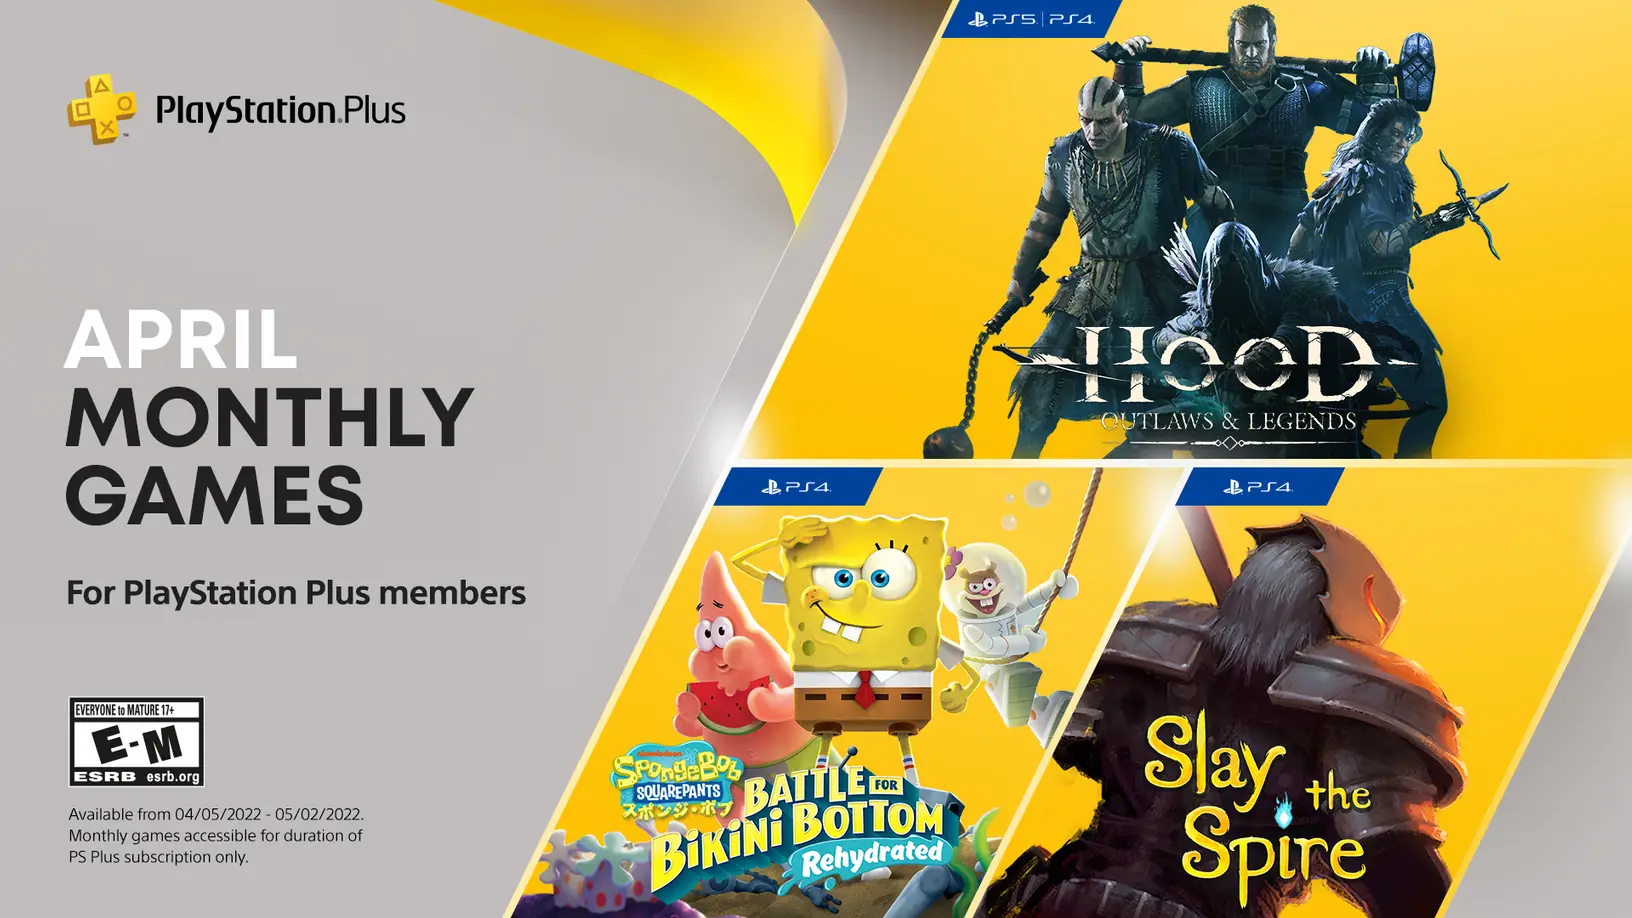 uheldigvis Luske uudgrundelig April's PlayStation Plus games have been revealed | VGC